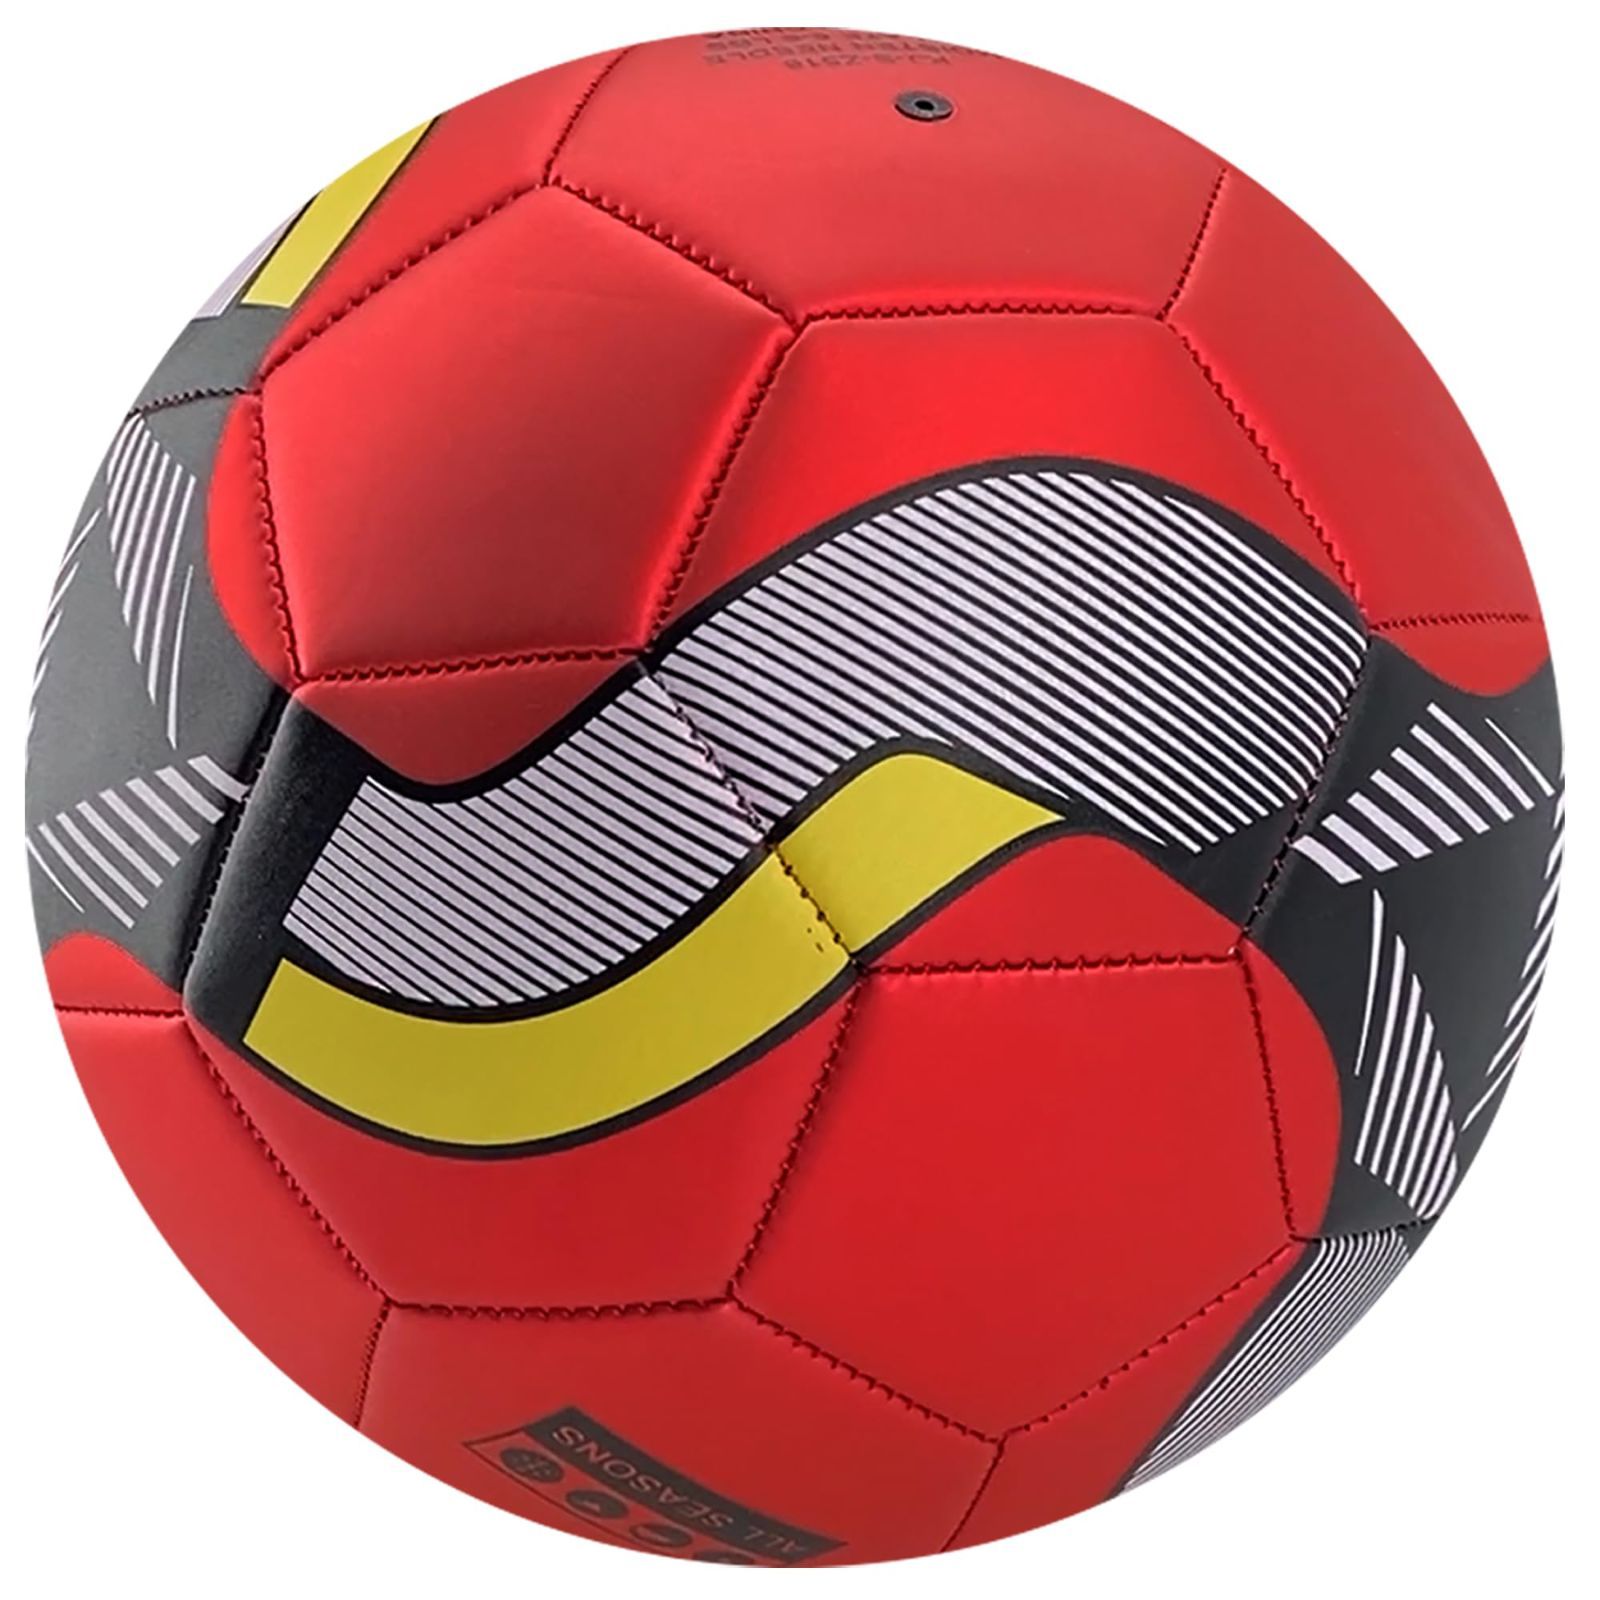 Senston サッカーボール 5号球 き-トレーニング試合サッカー大人と青少年サッカーポンプ付